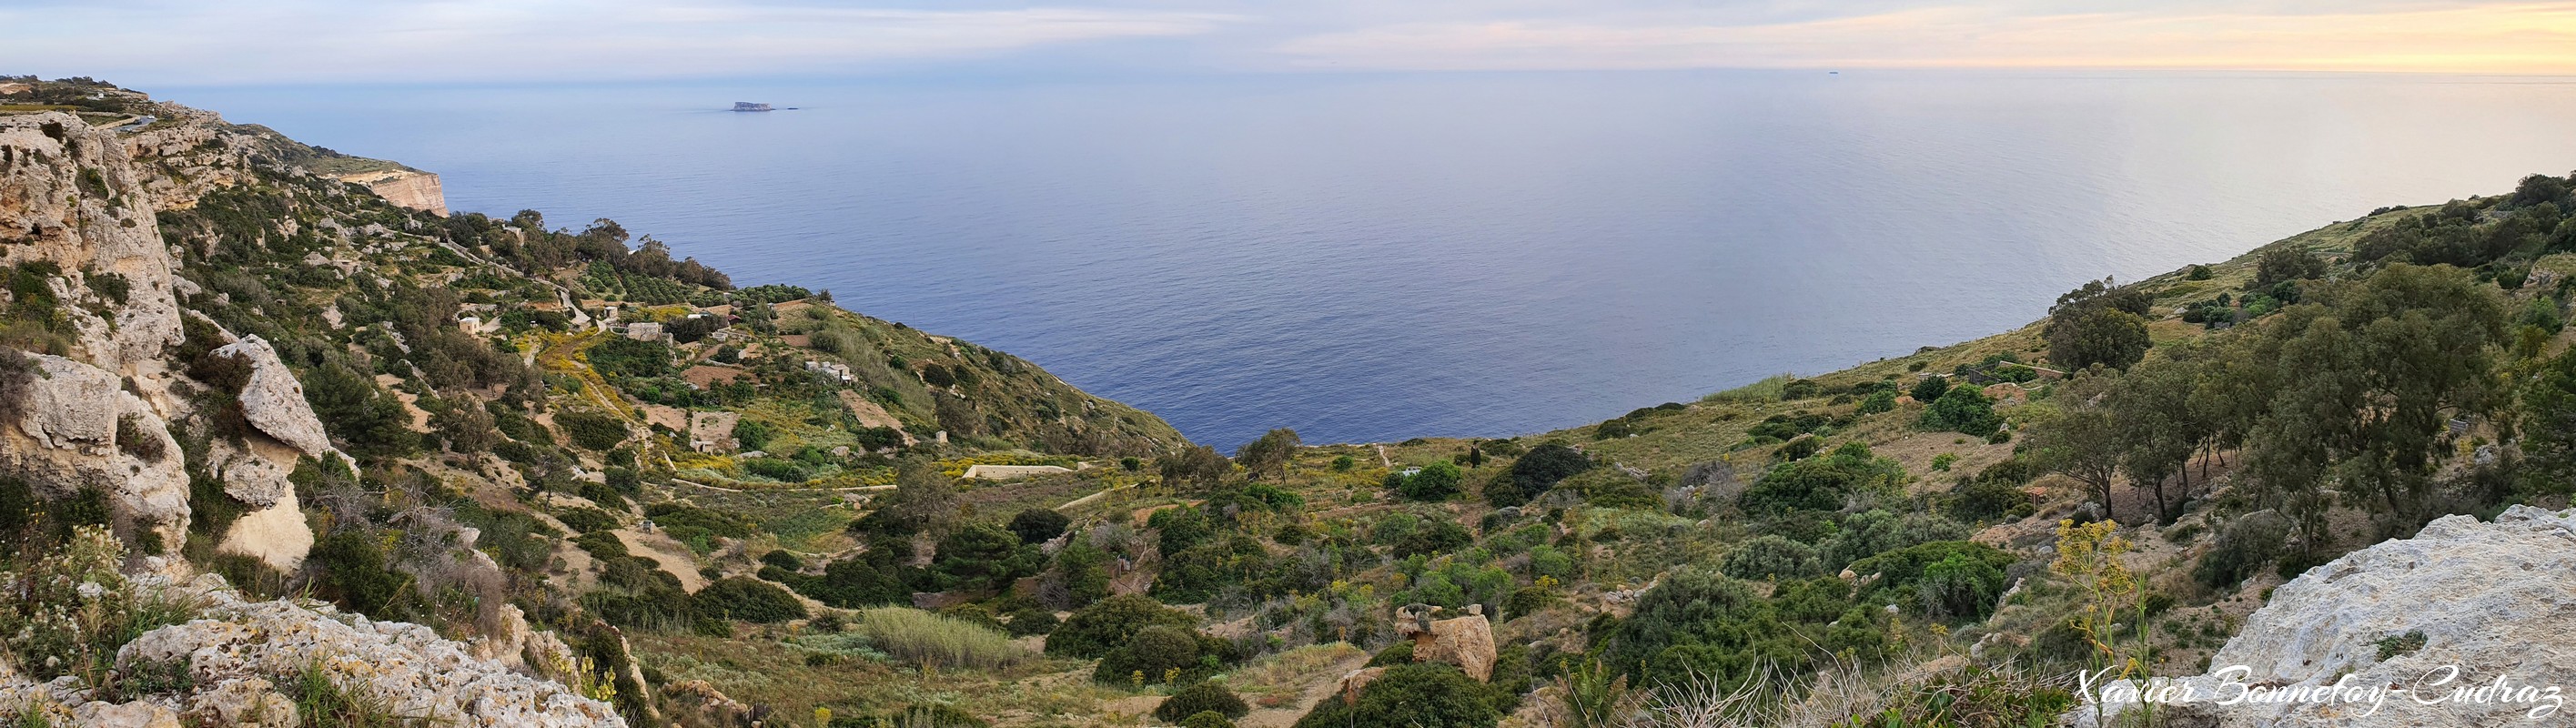 Dingli Cliffs - panorama
Mots-clés: Dingli geo:lat=35.85167922 geo:lon=14.38562304 geotagged Malte MLT Tal-Veċċa Malta Southern Region Dingli Cliffs panorama